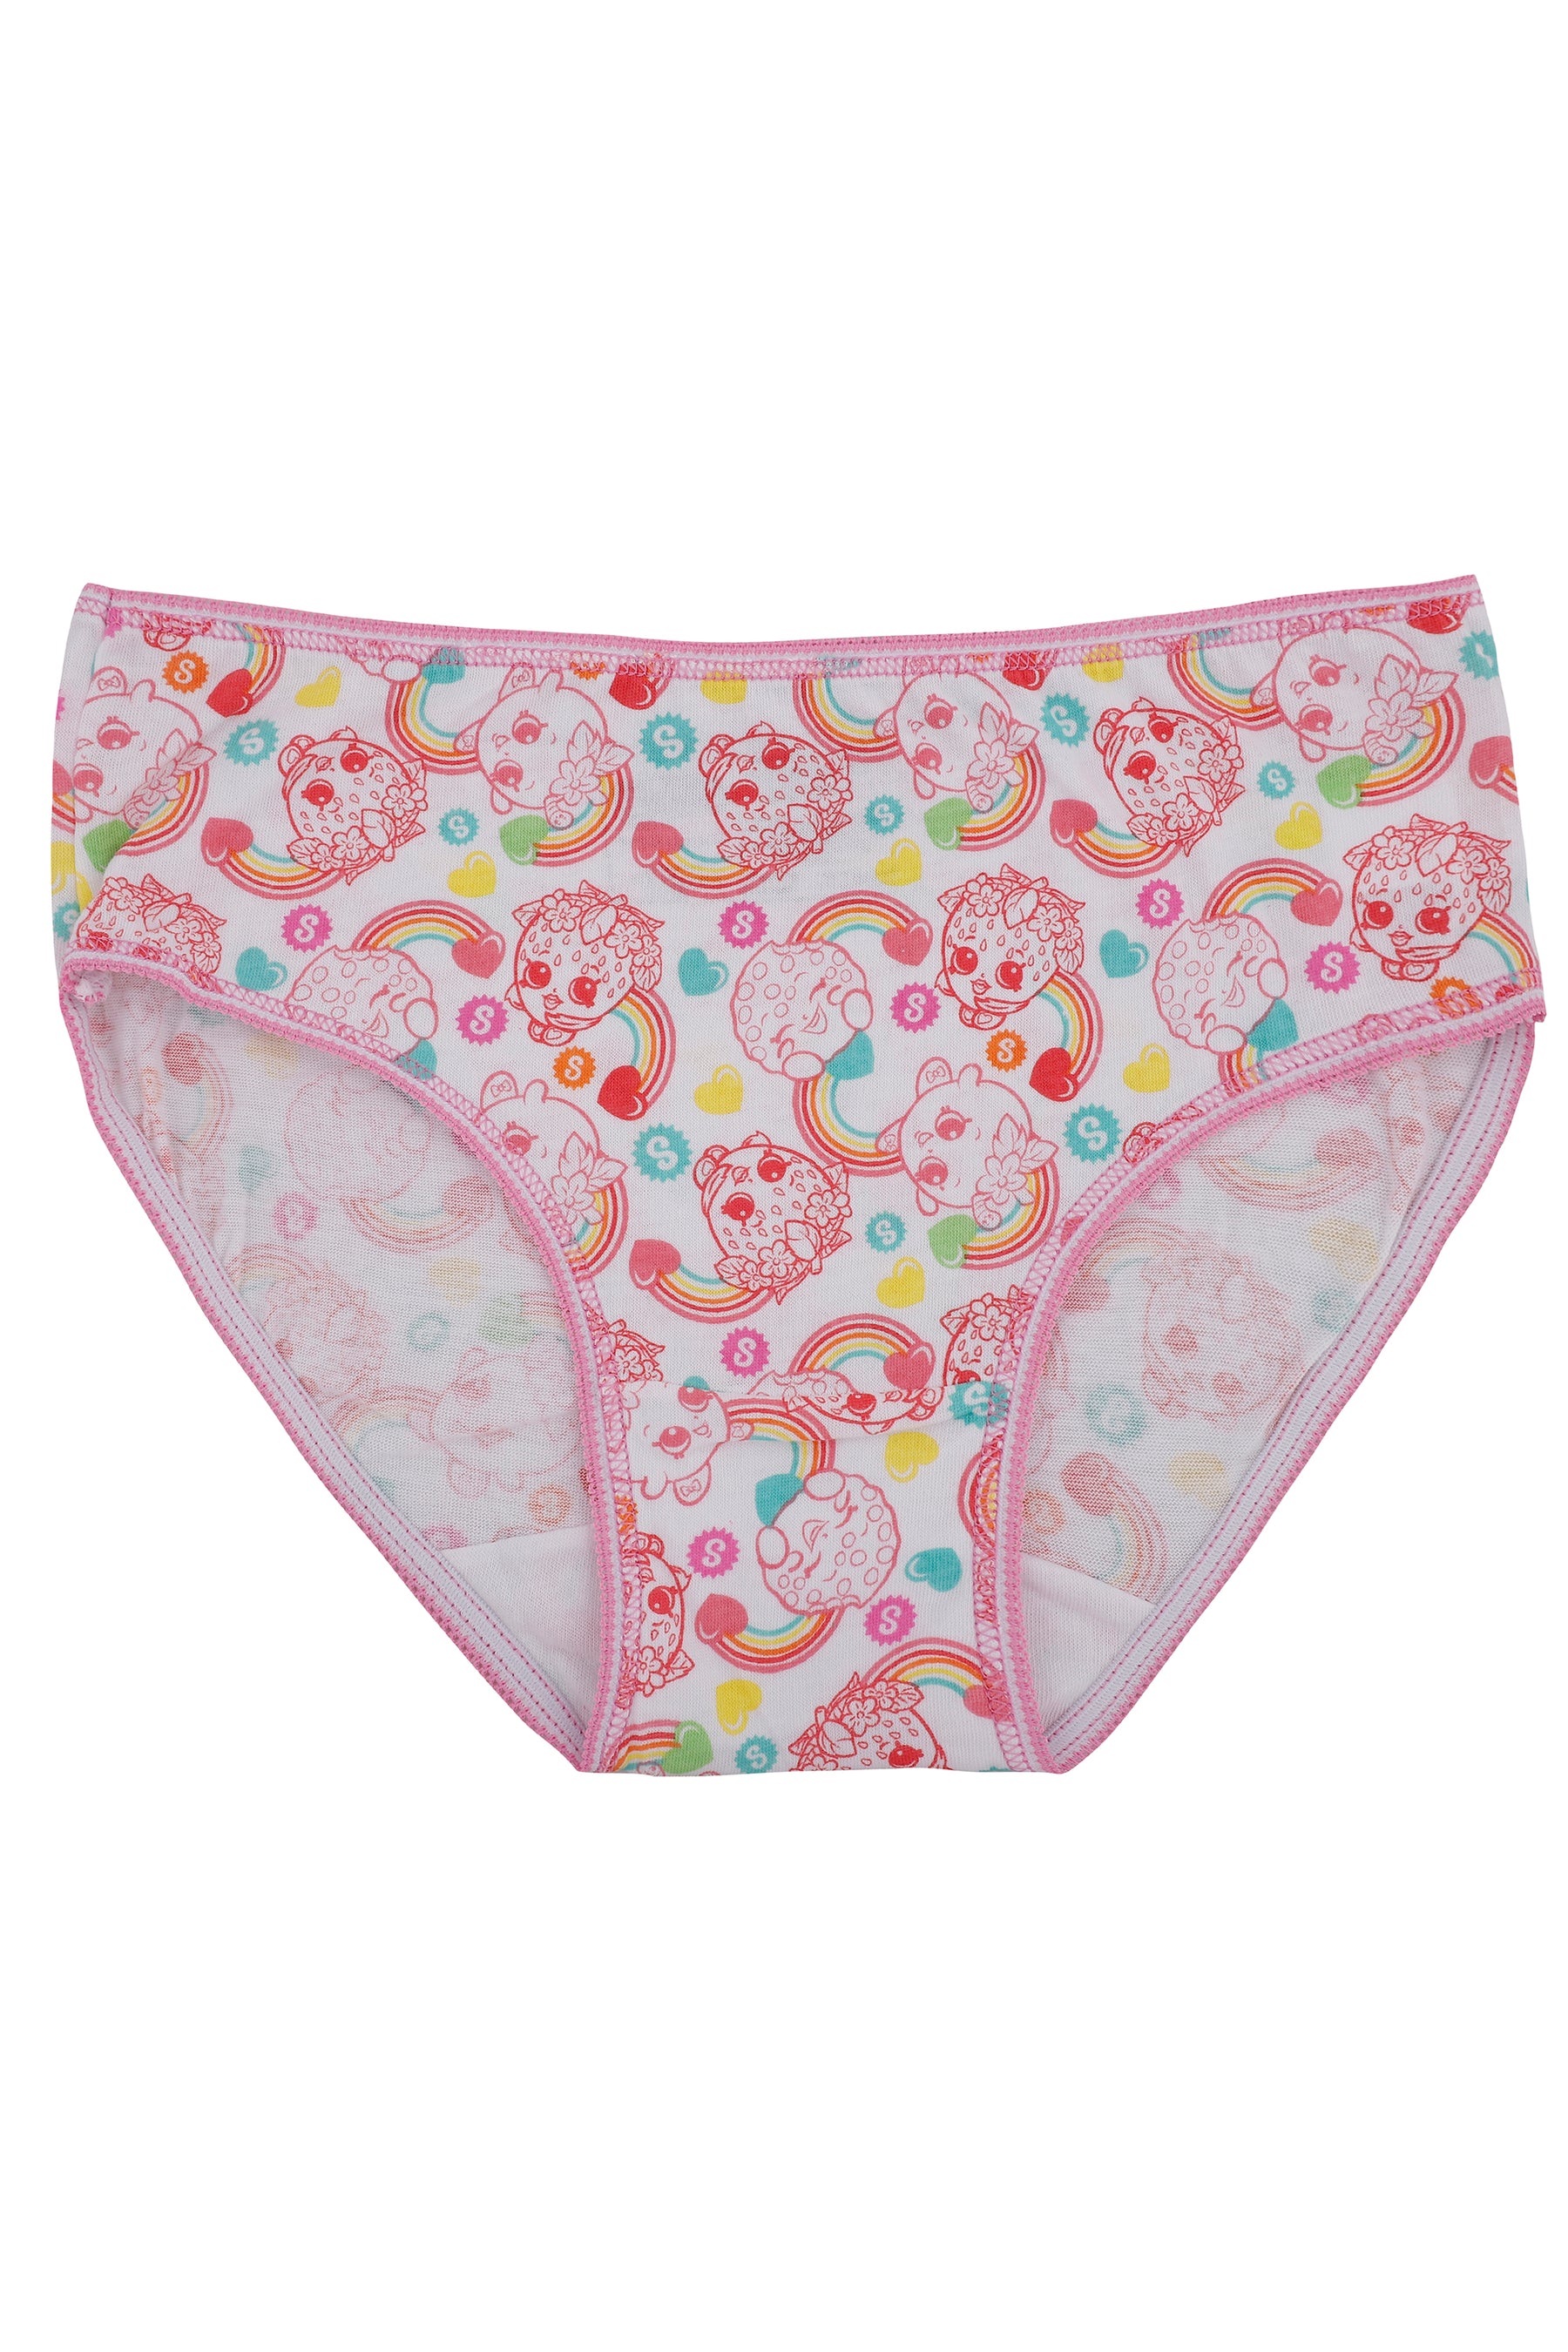 Shopkins Girls' Little Rainbow 3 Pack Brief Underwear Set, Multi, 4 :  : Fashion